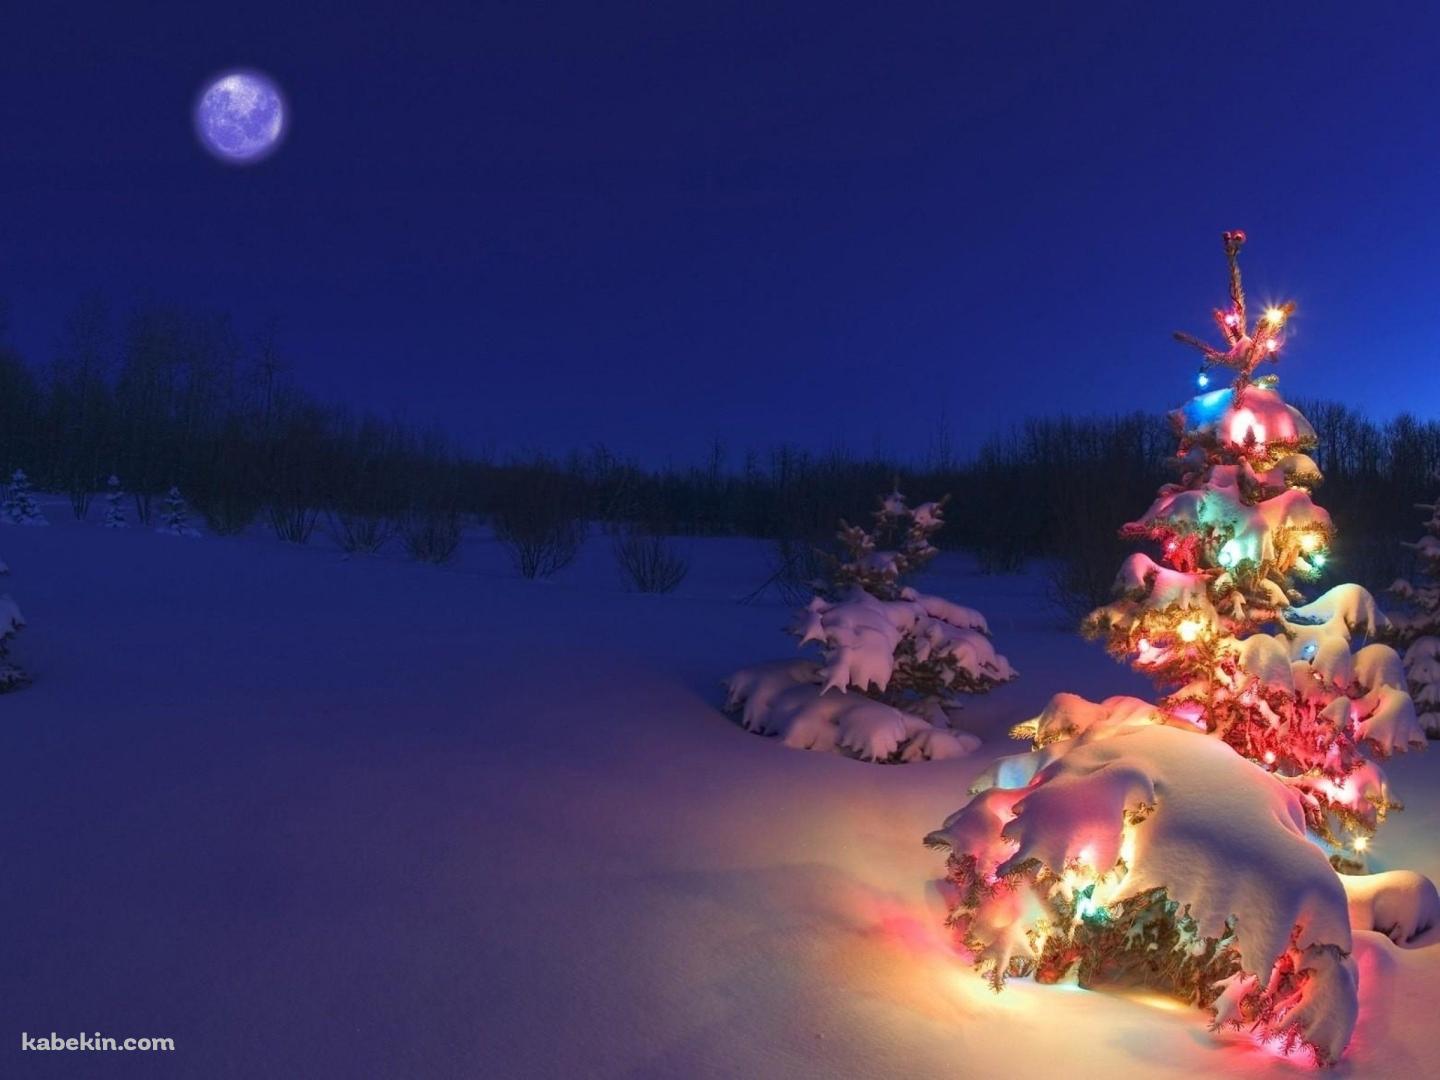 クリスマスツリーと満月の壁紙(1440px x 1080px) 高画質 PC・デスクトップ用